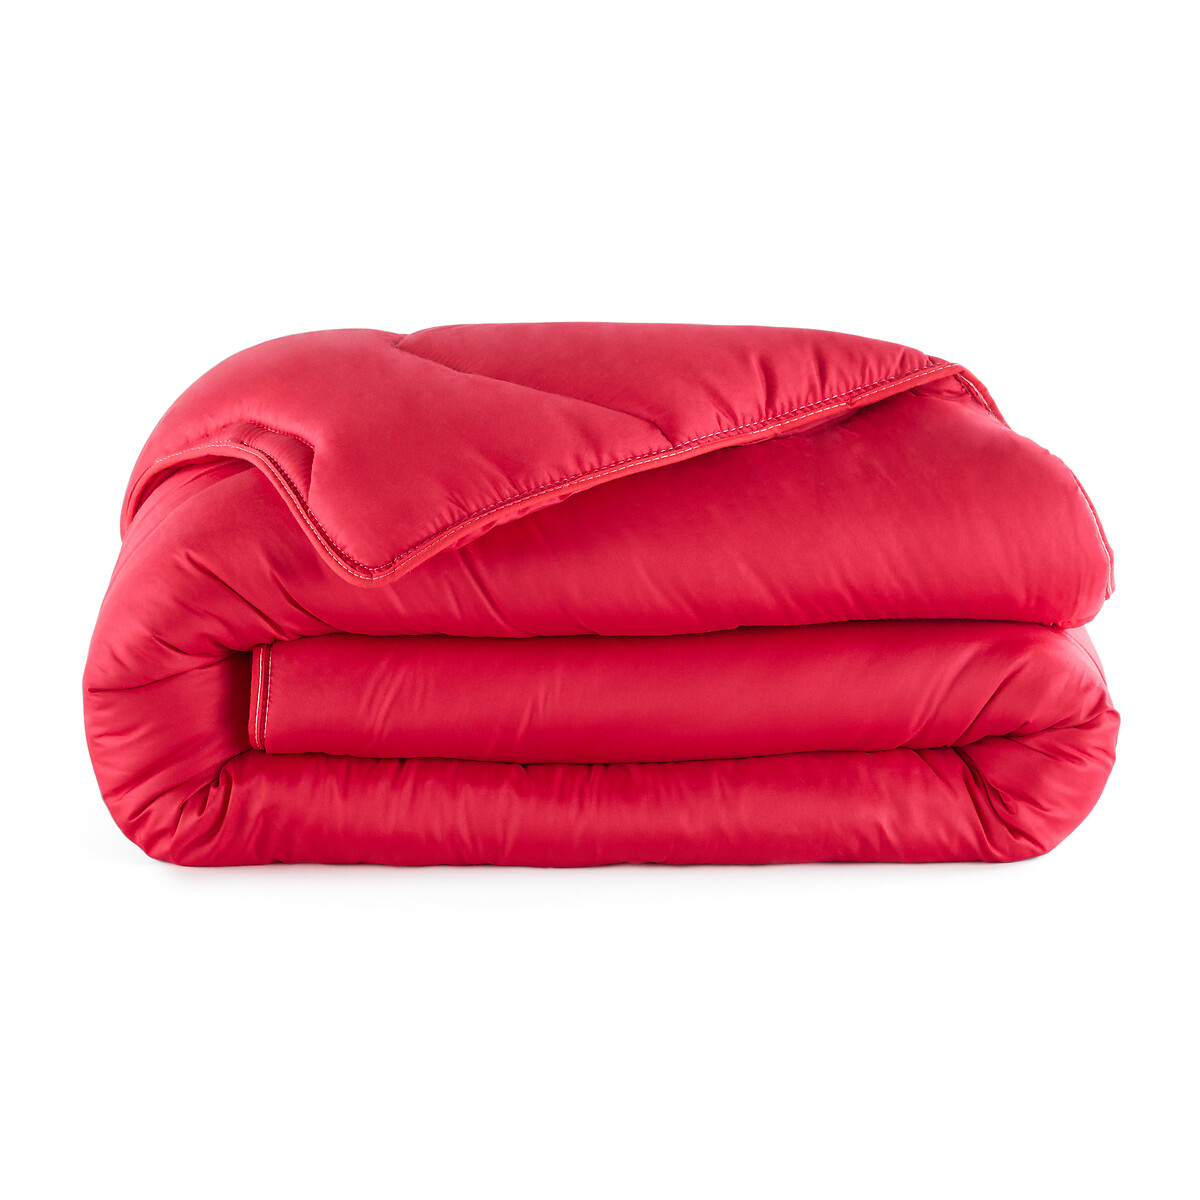 Одеяло La Redoute Rverie Color  гм 240 x 220 см красный, размер 240 x 220 см - фото 2